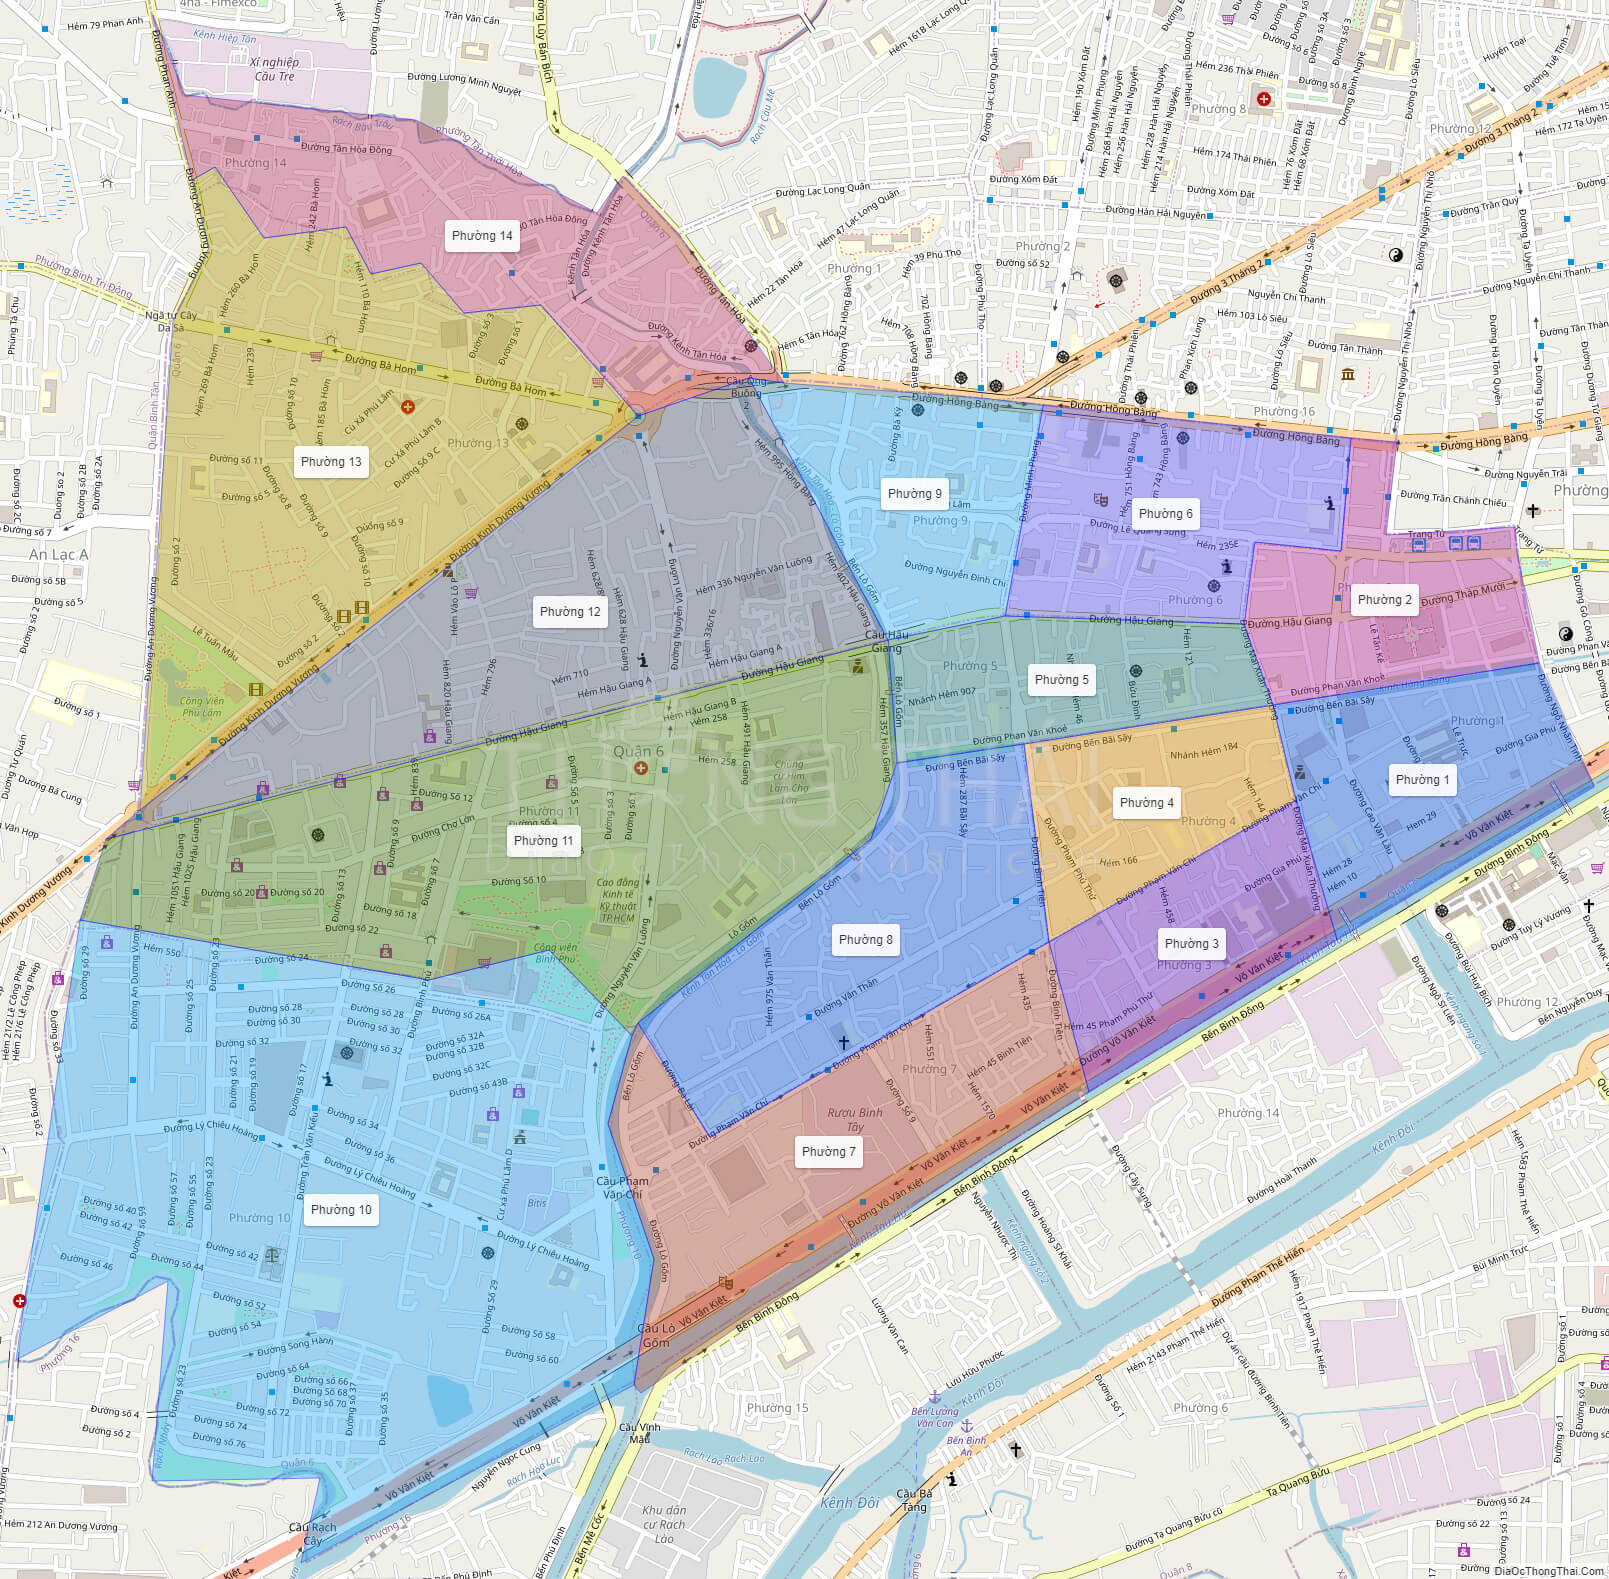 Địa ốc quận 6 TPHCM trên bản đồ năm 2024 đang thu hút sự chú ý của nhiều người! Với sự phát triển của khu vực, các dự án bất động sản đang được triển khai và bản đồ sẽ giúp bạn tìm kiếm thông tin về các căn hộ, chung cư, nhà phố và các dự án khác tại quận